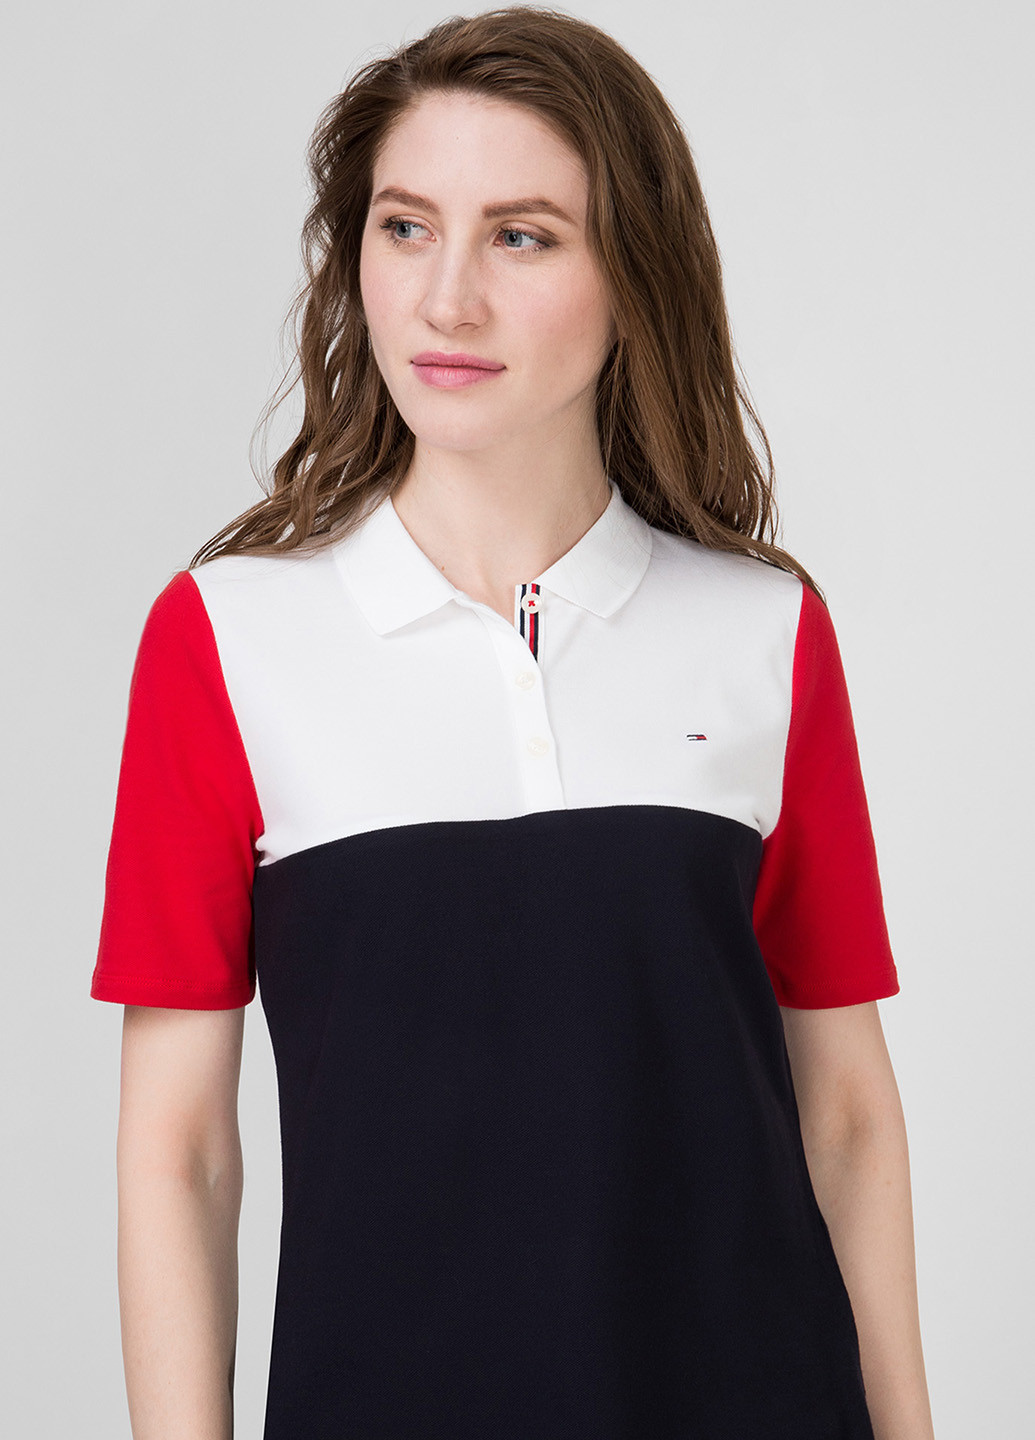 Цветная женская футболка-поло Tommy Hilfiger с логотипом